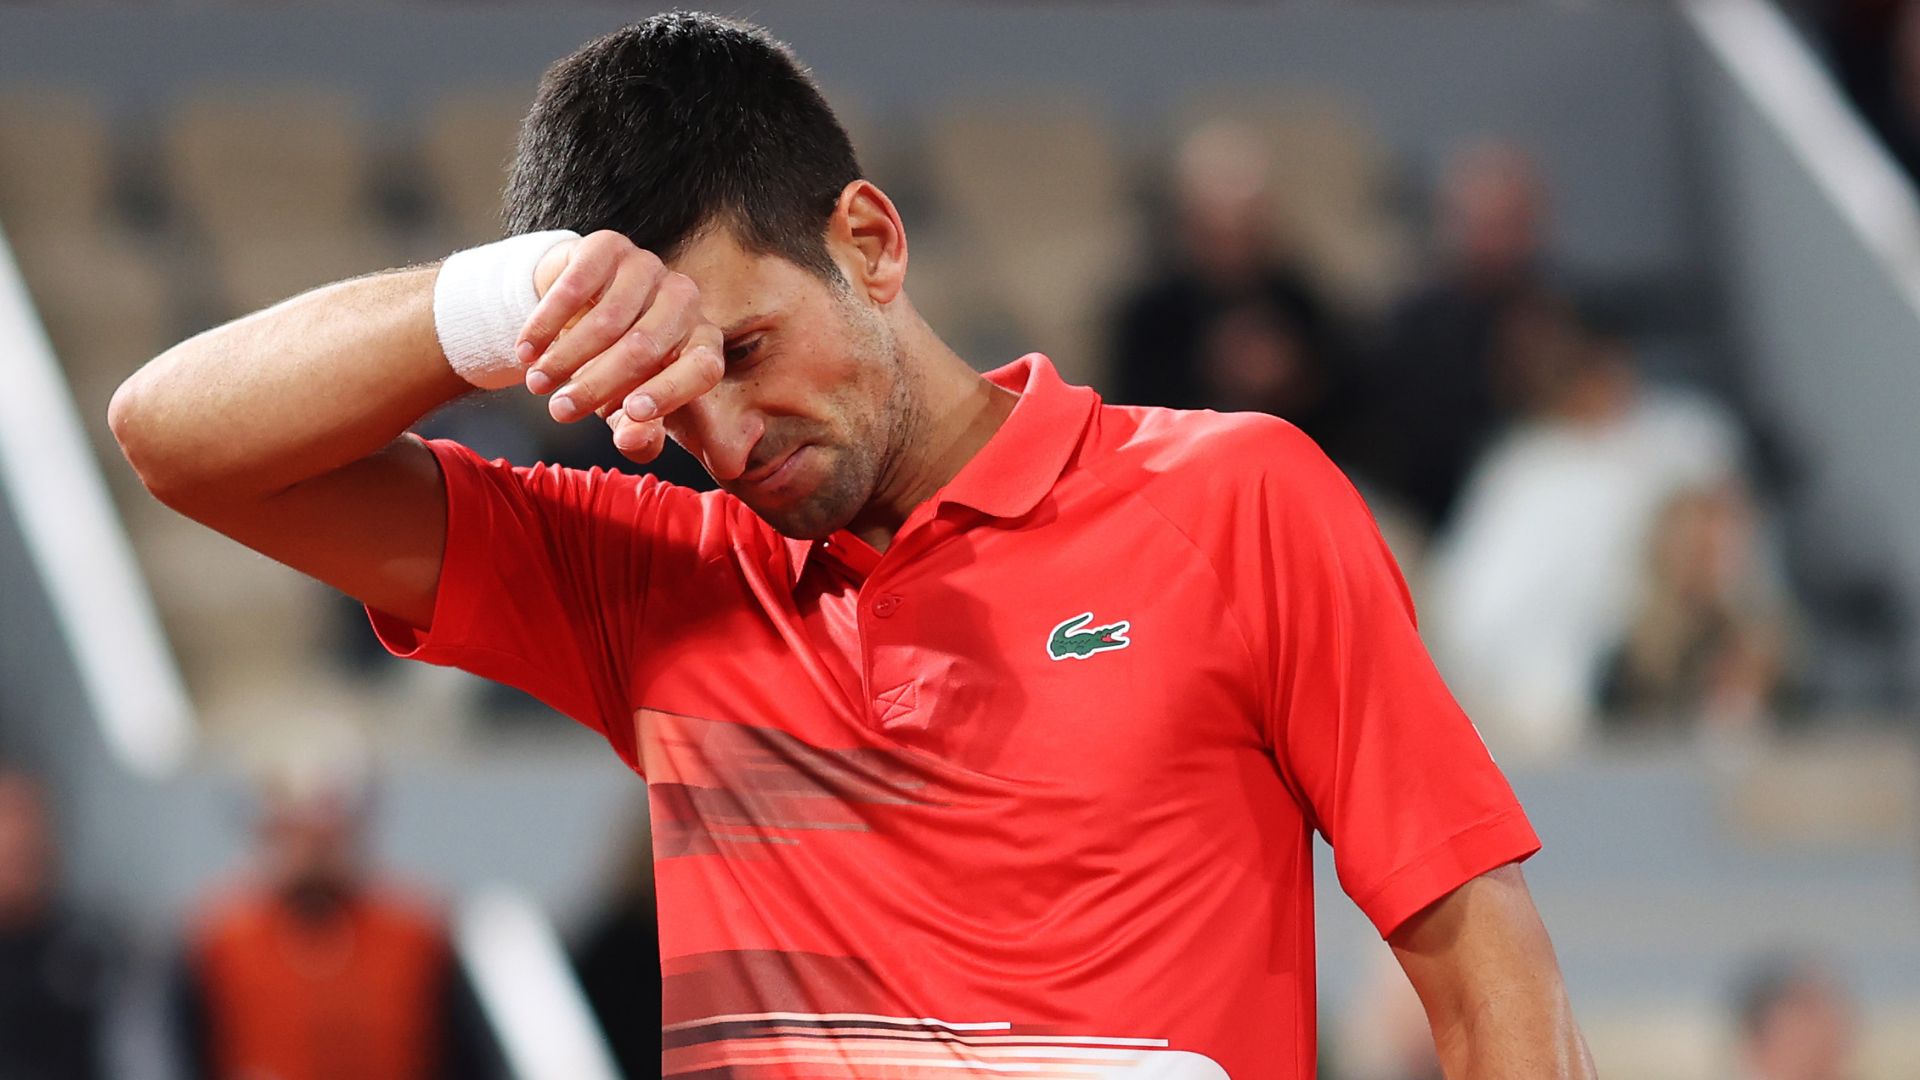 US Open explica inscrição de Djokovic